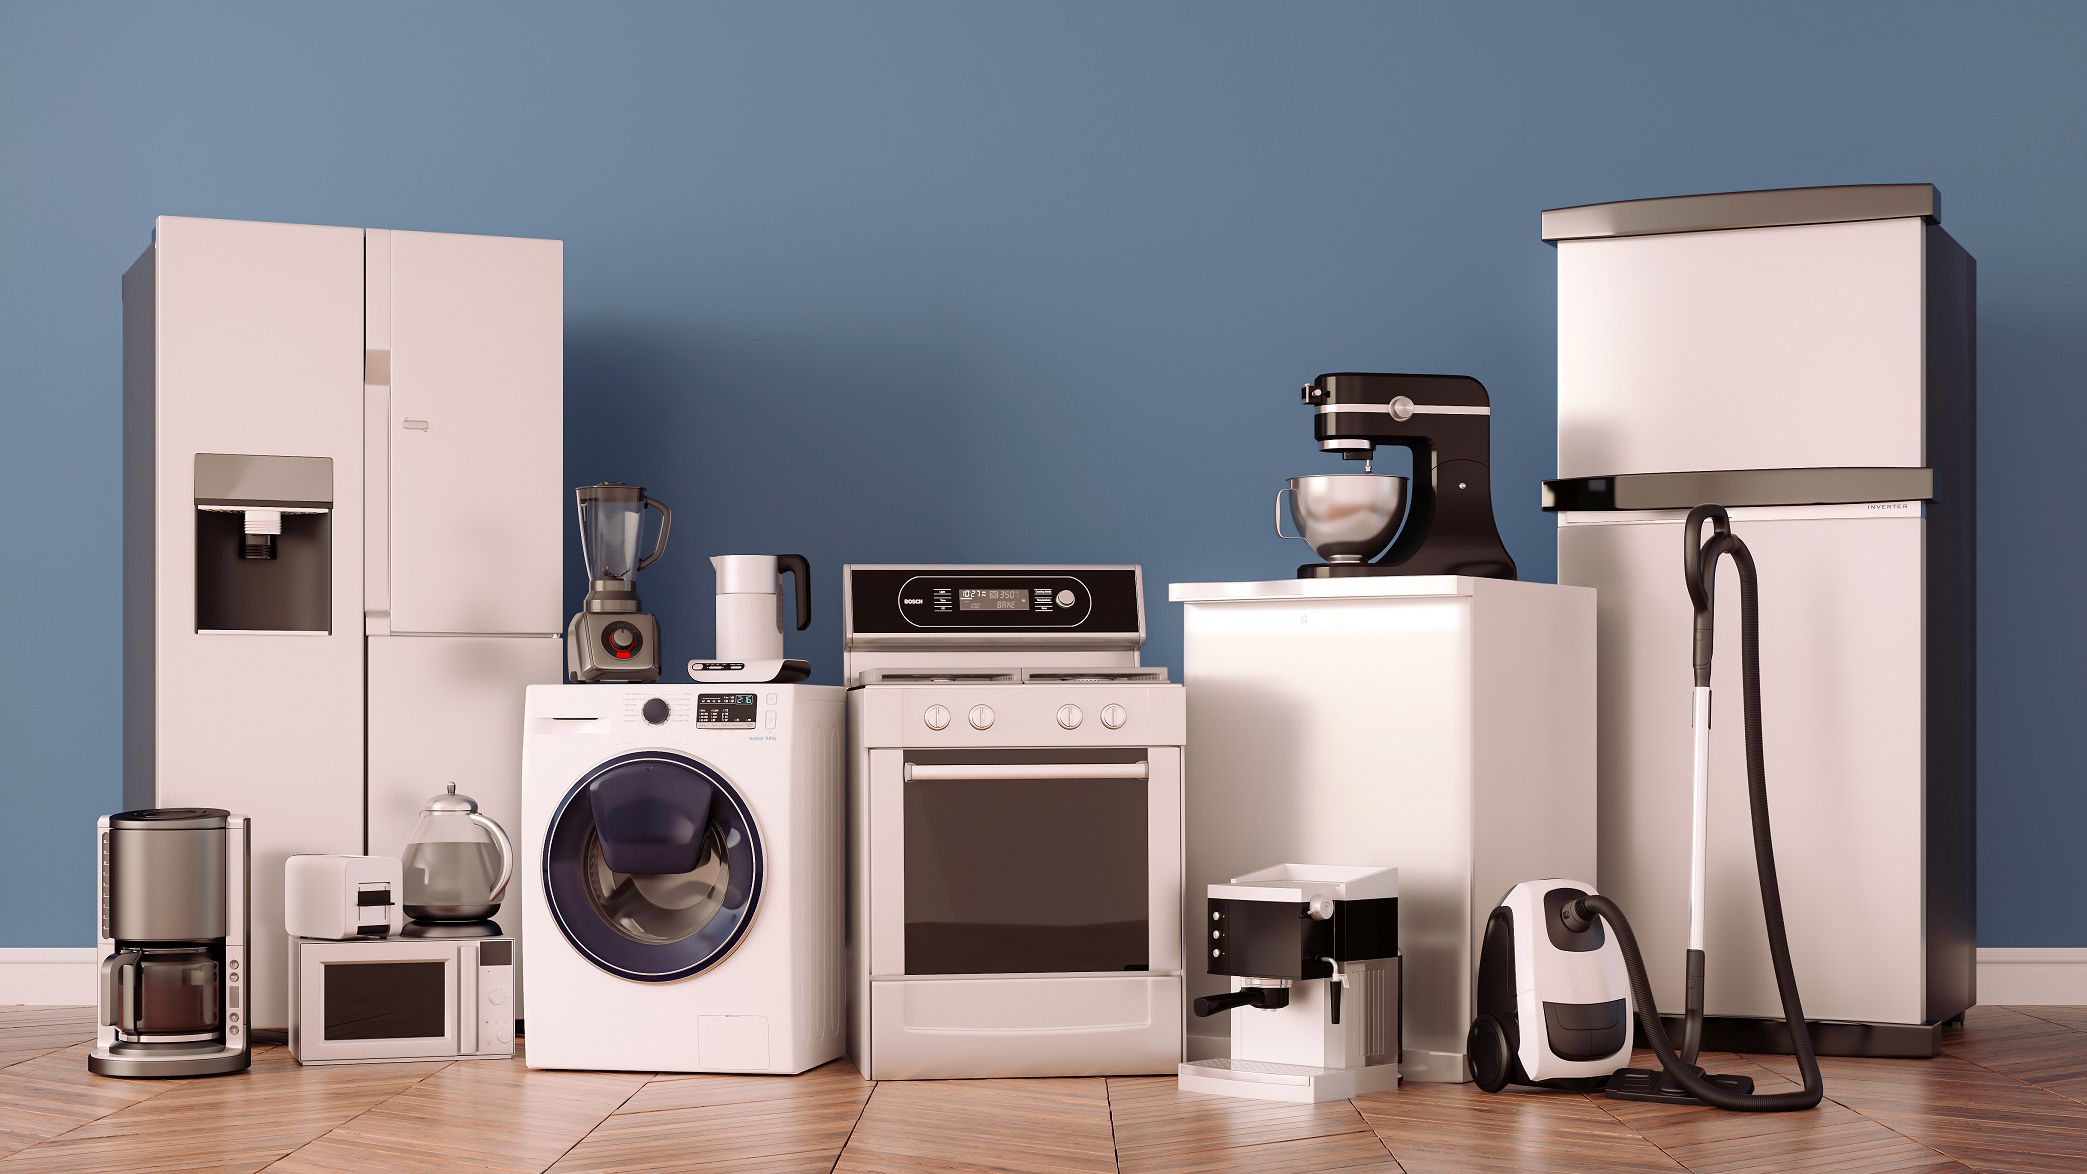 Pilihan peralatan dapur besar dan kecil termasuk lemari es, mesin cuci, vakum dan mixer